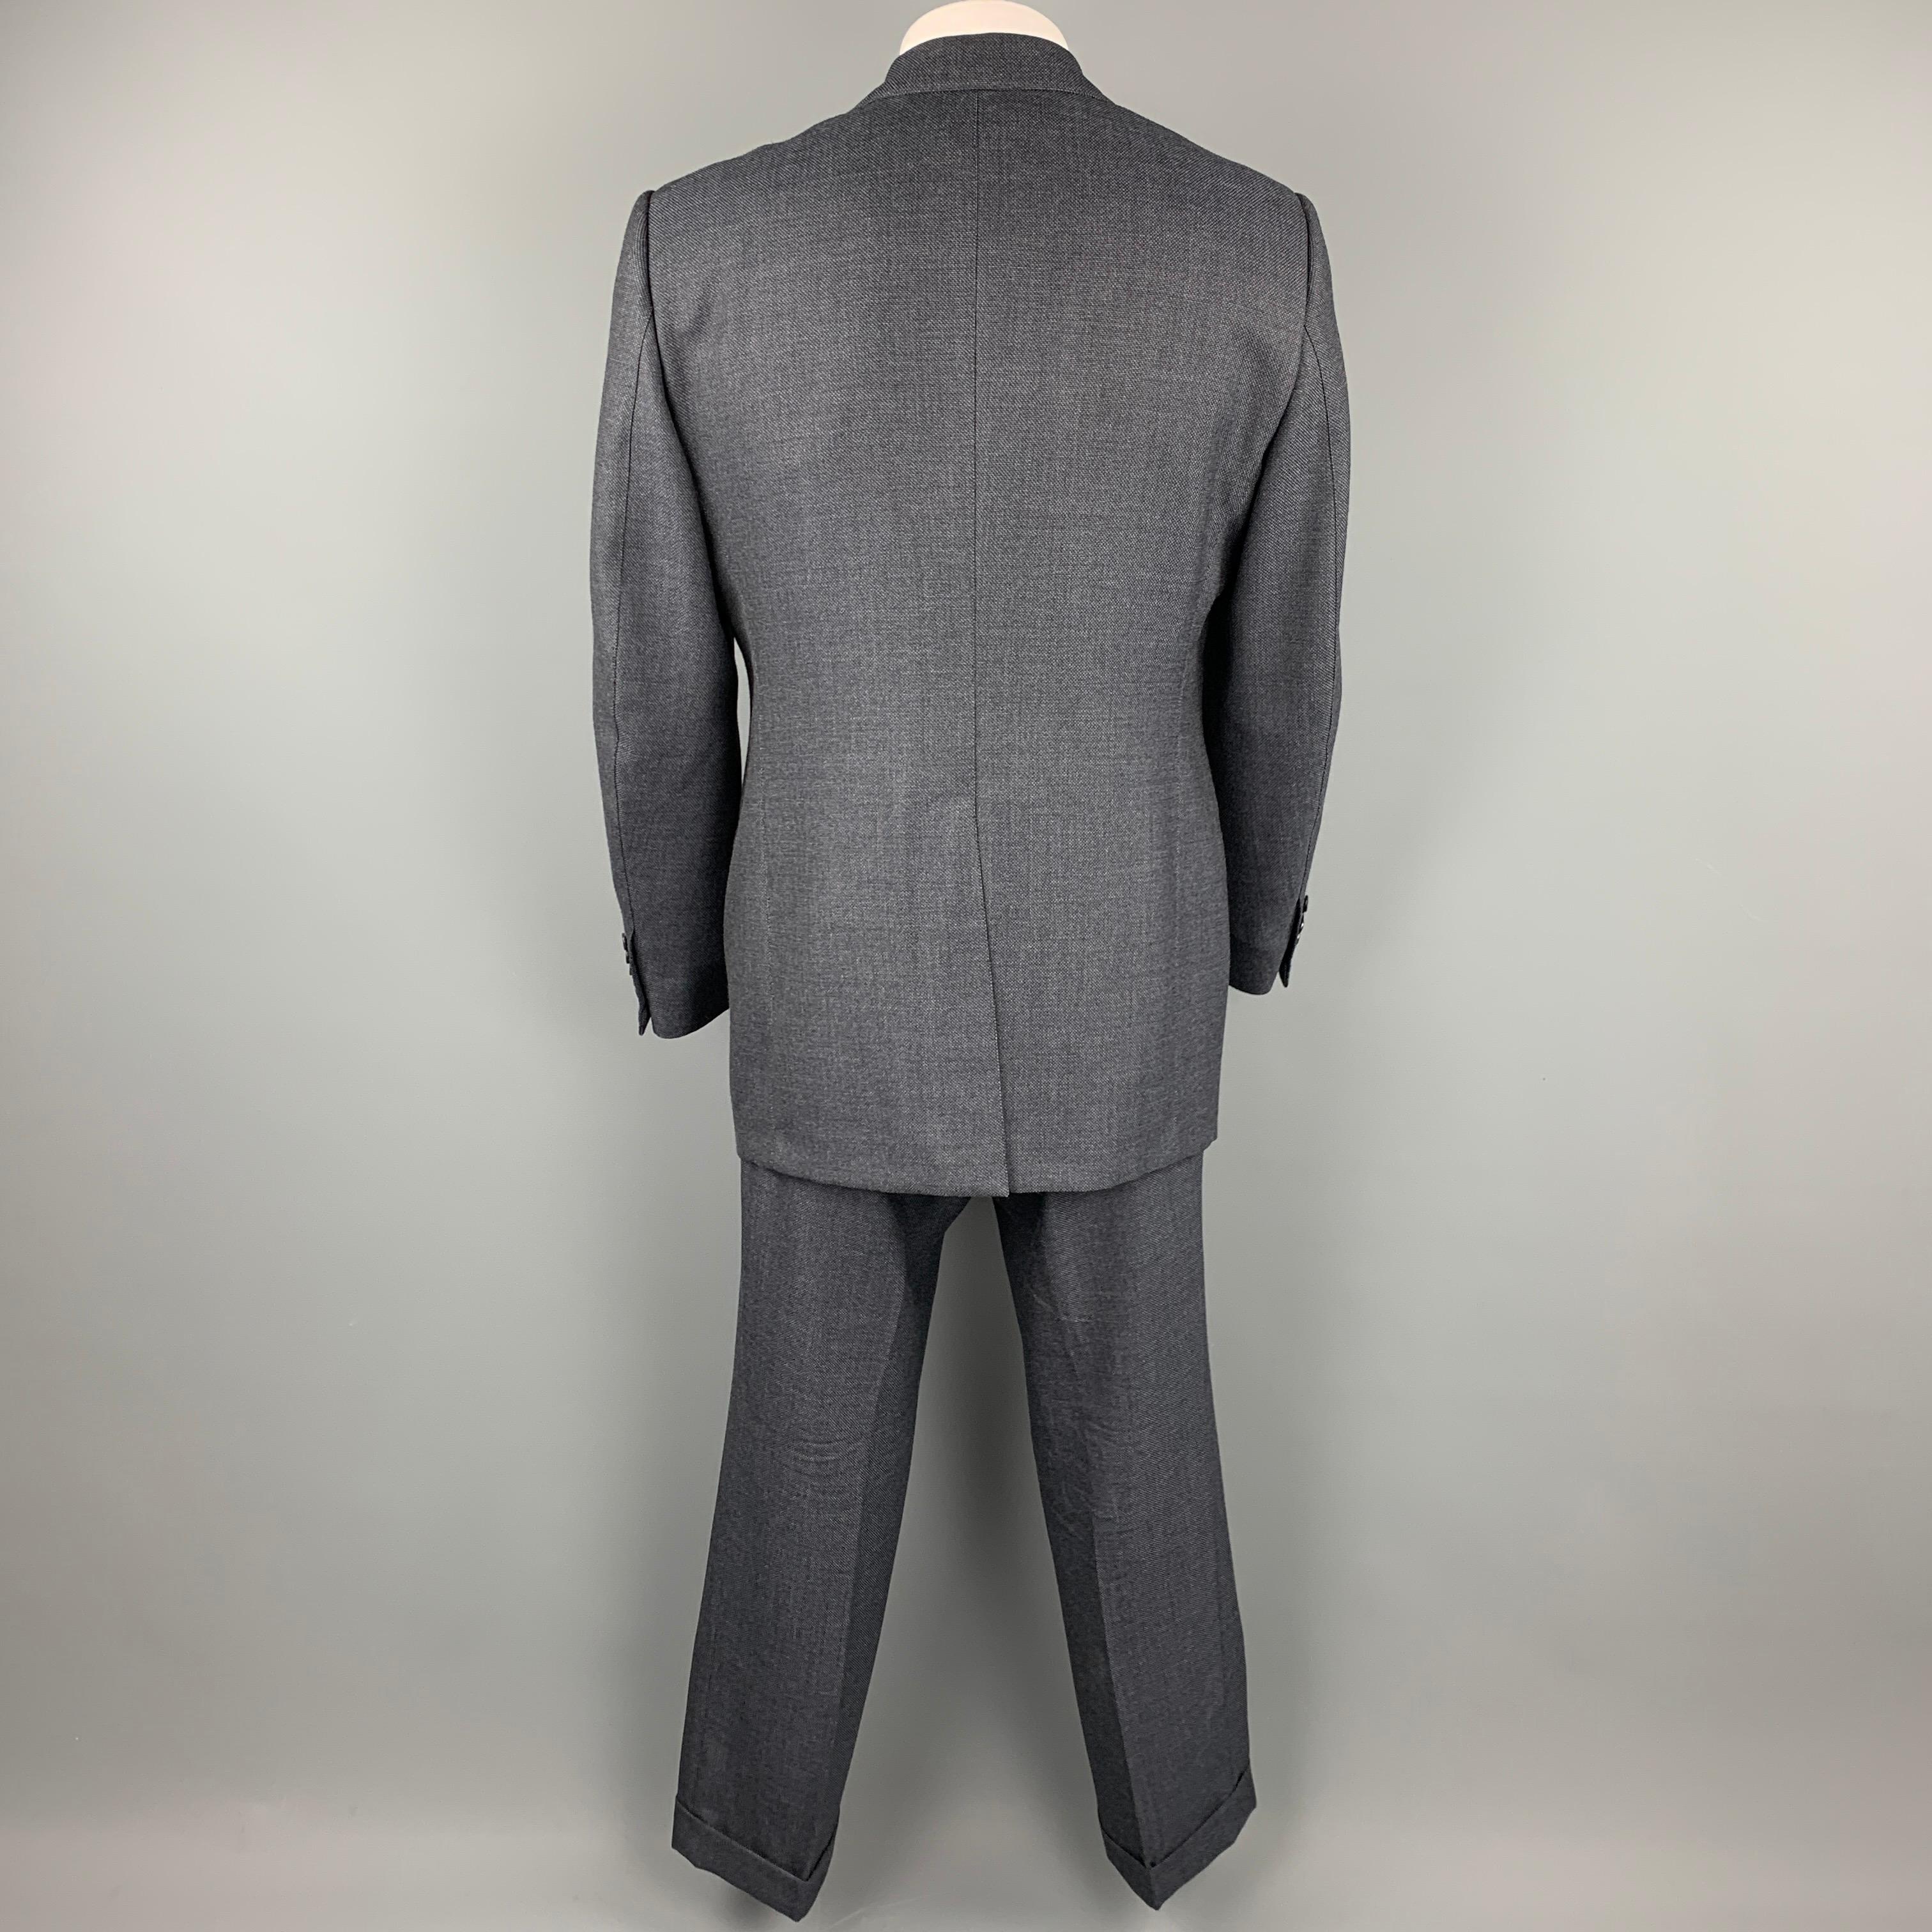 48 suit size